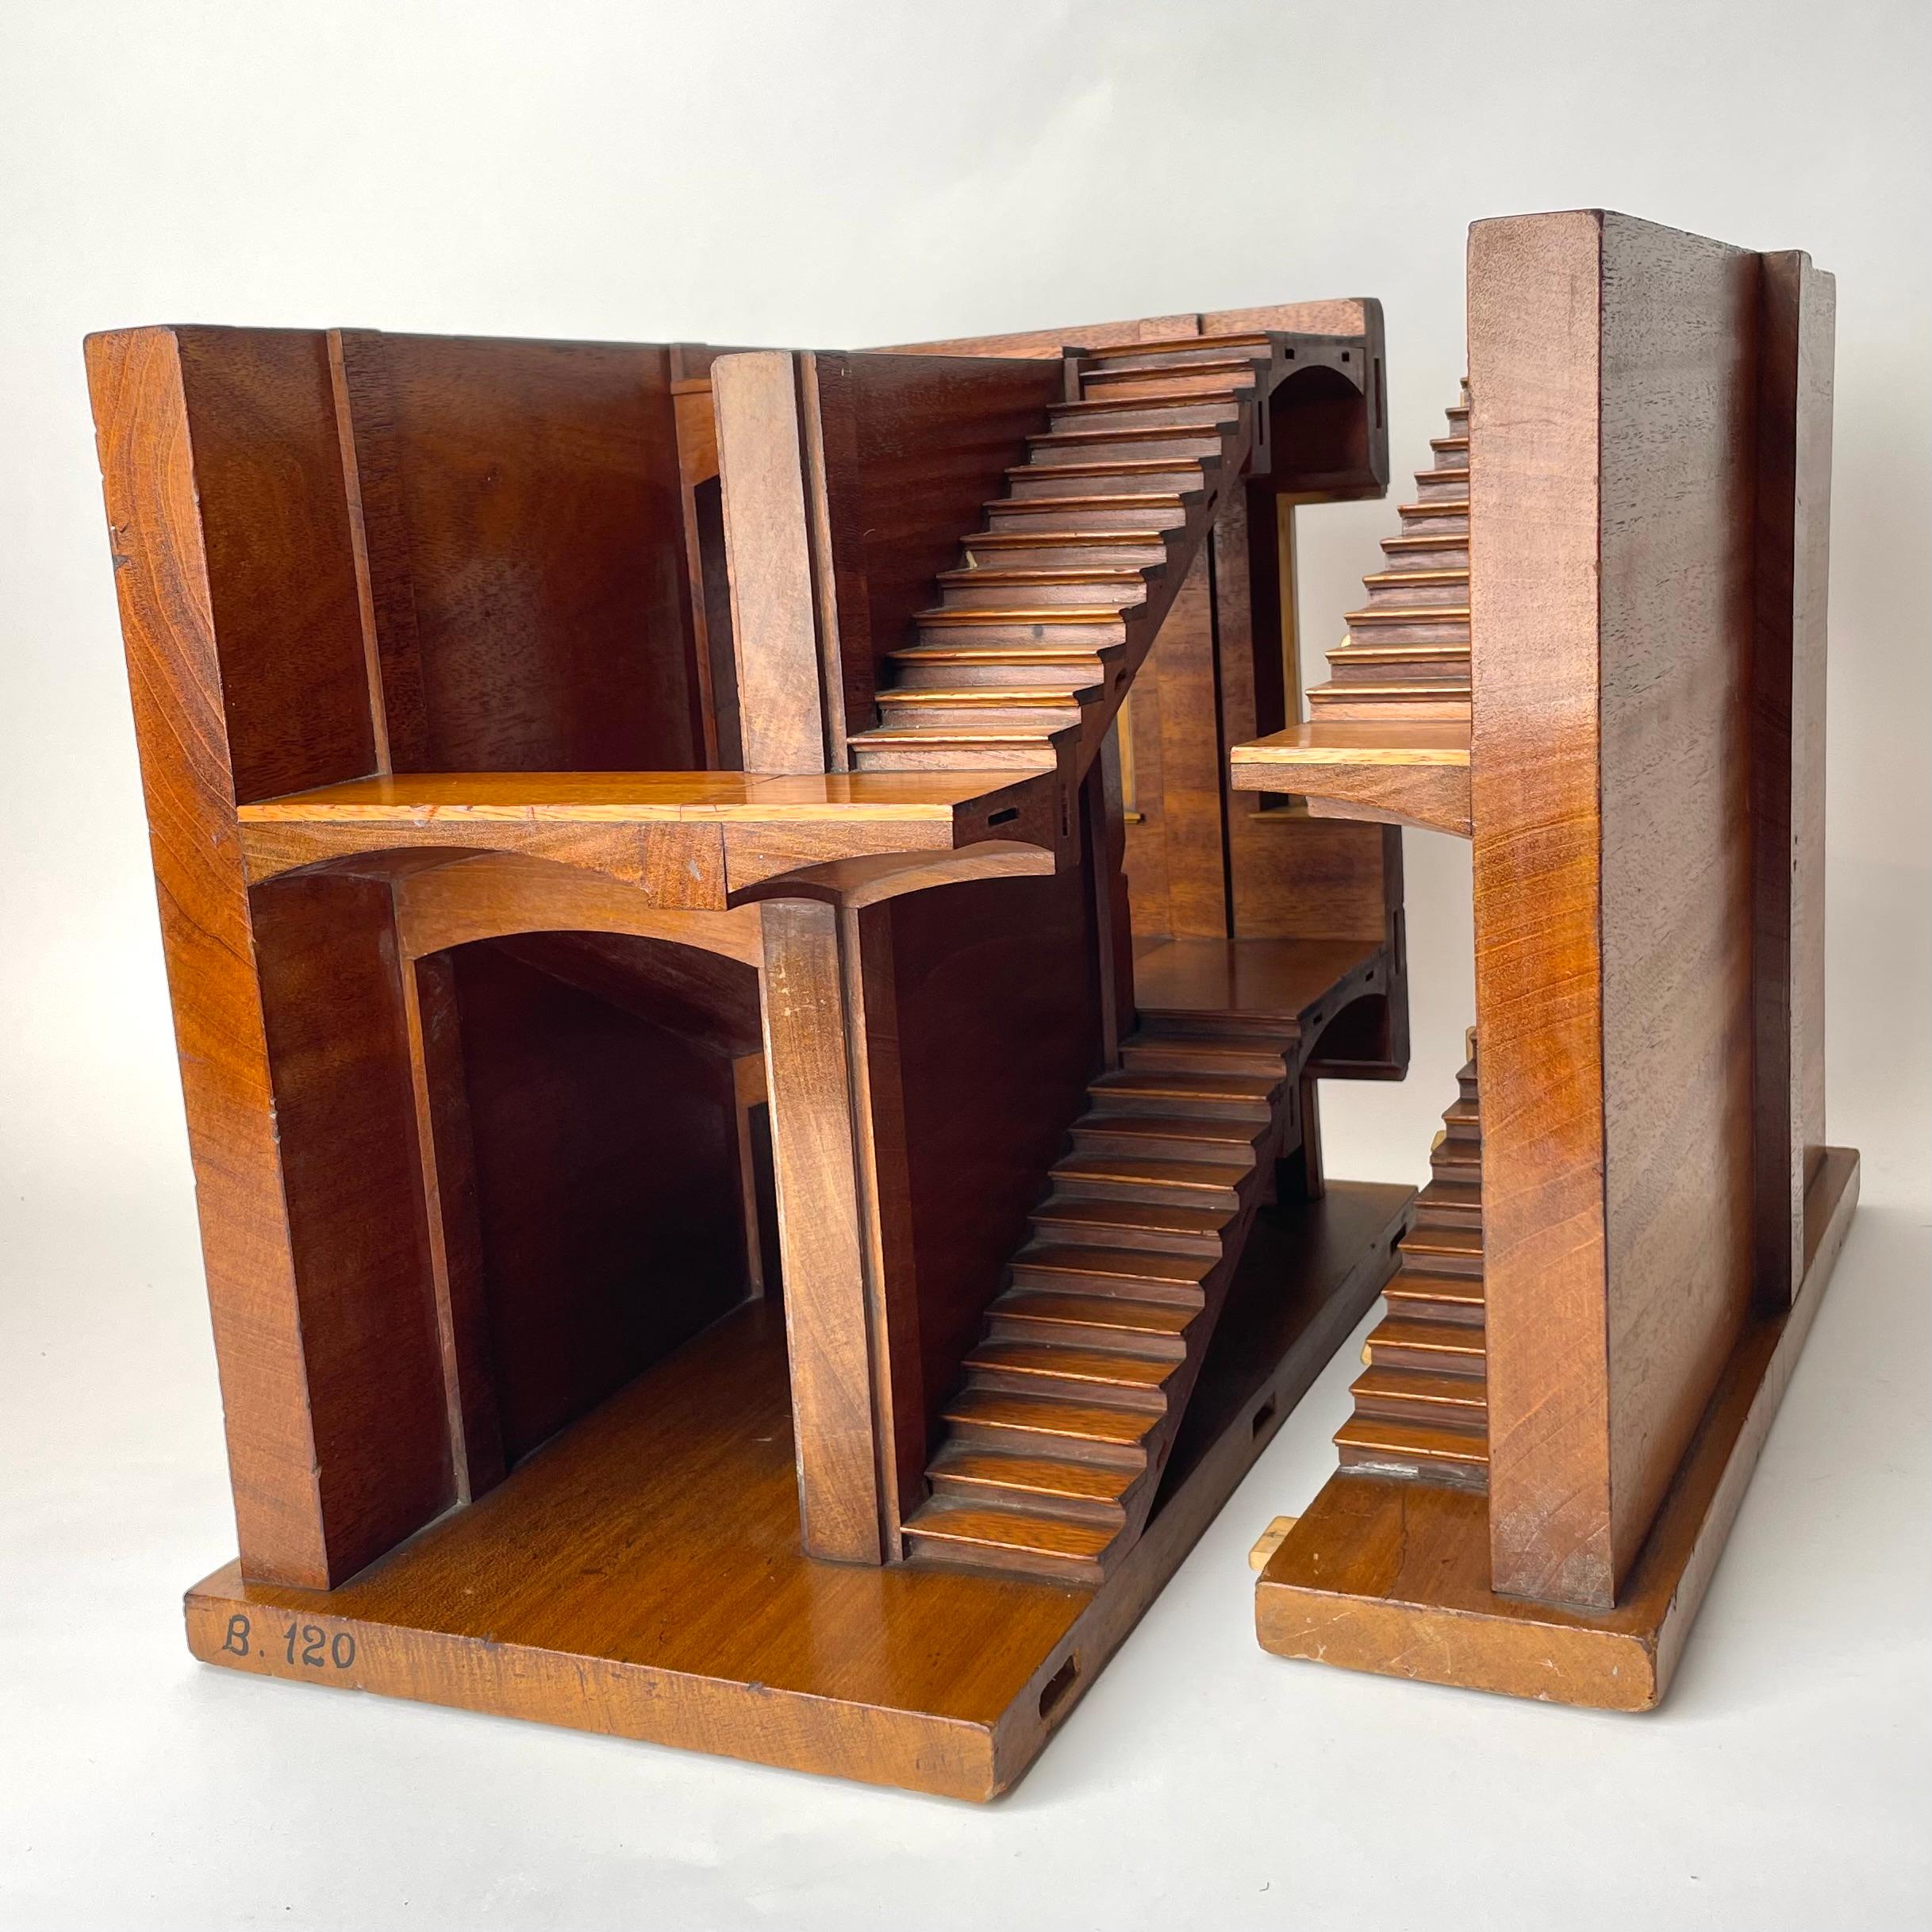 Architektonisches Modell aus Mahagoni des späten 19. und frühen 20. Jahrhunderts in England. Möglicherweise für Bildungszwecke oder Architekturwettbewerbe.

Ein wunderschön detailliertes Treppenmodell für die Architektur aus Mahagoni (Swietania